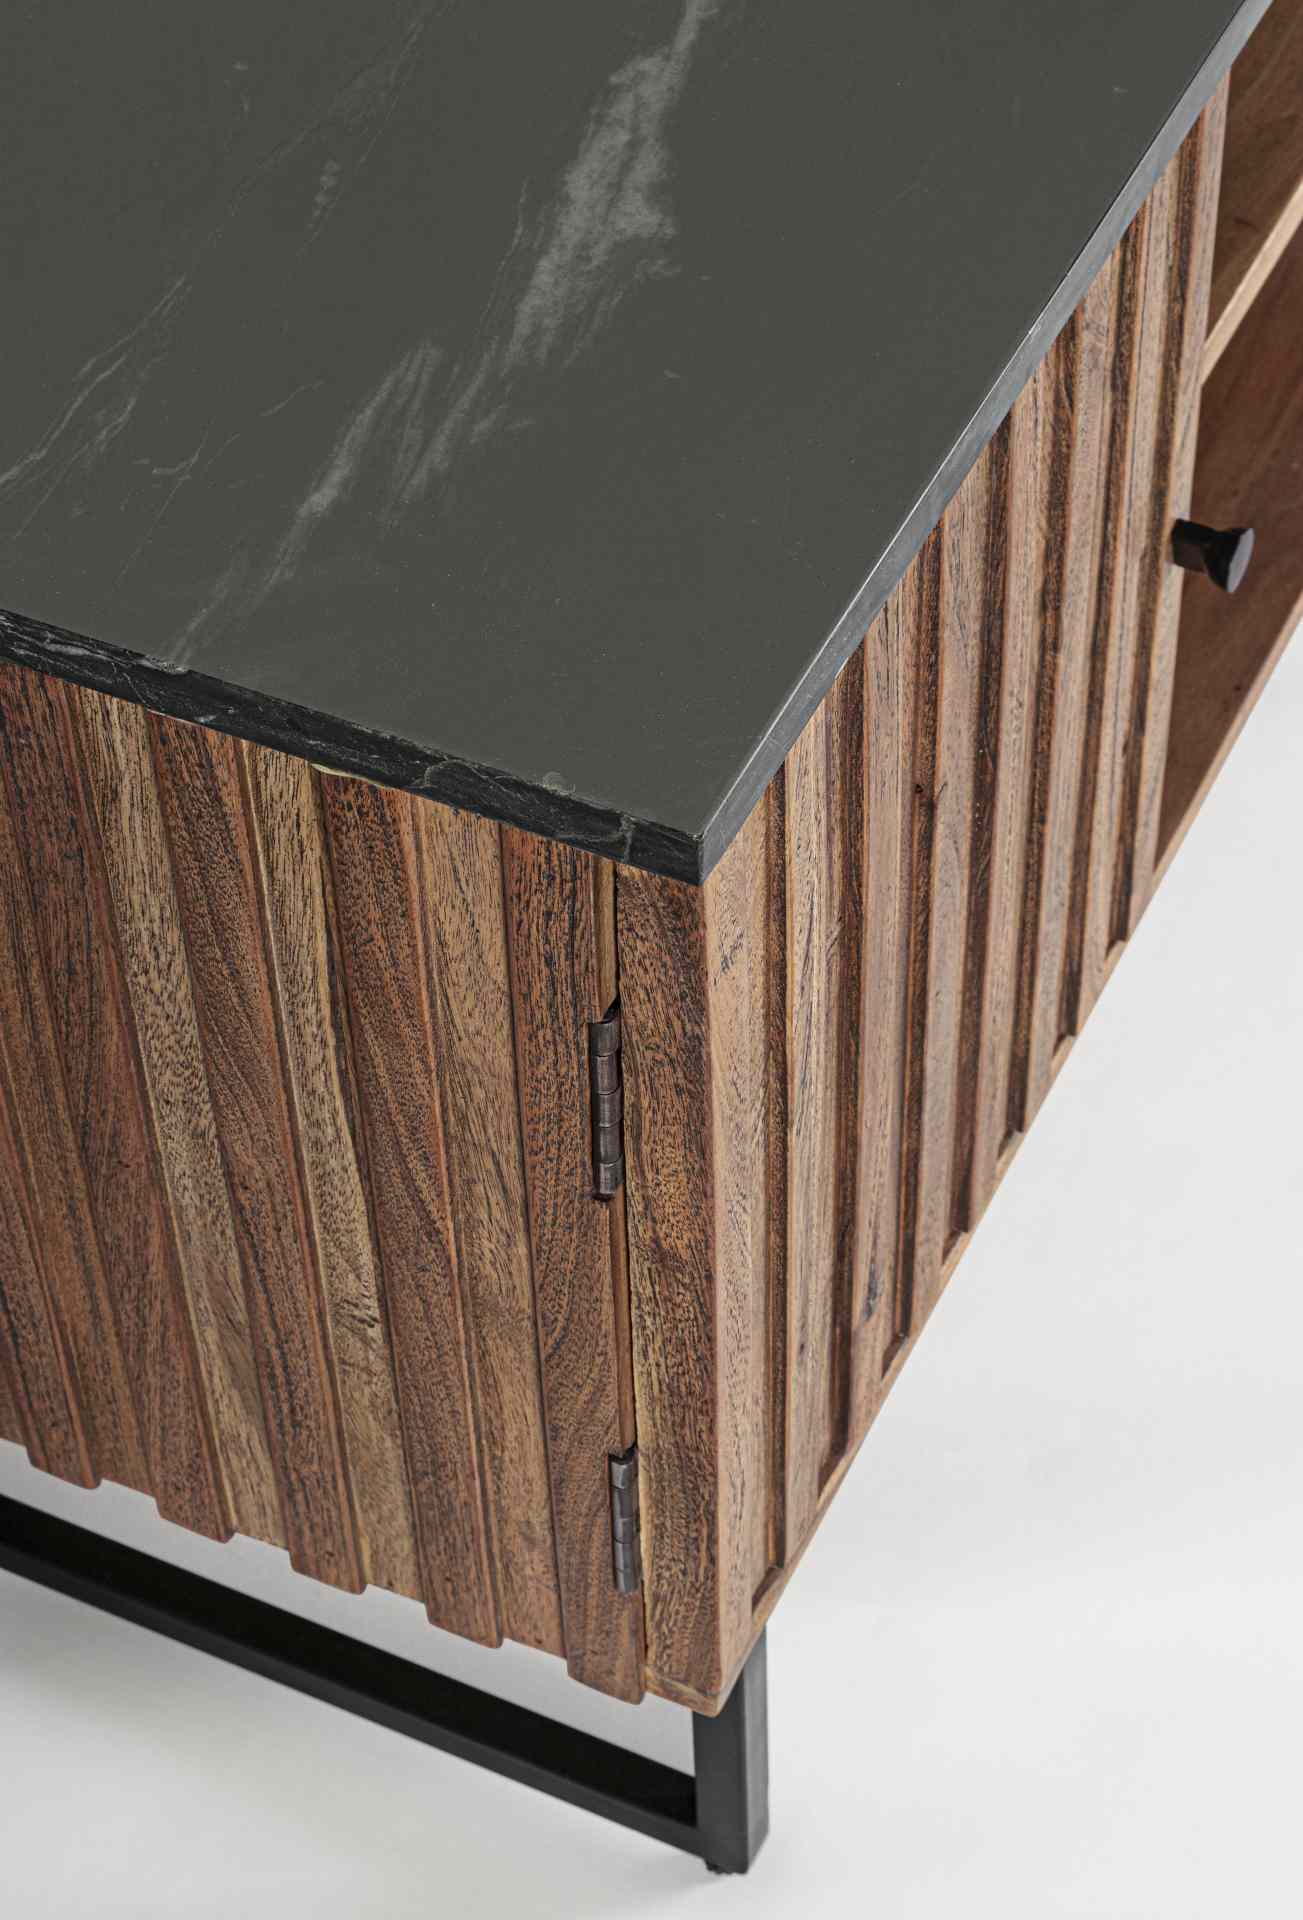 Das TV Board Norfolk überzeugt mit seinem klassischen Design. Gefertigt wurde es aus Akazienholz, welches einen natürlichen Farbton besitzt. Das Gestell ist aus Metall und hat eine schwarze Farbe. Die Oberflächenplatte ist aus Marmor. Das TV Board verfügt